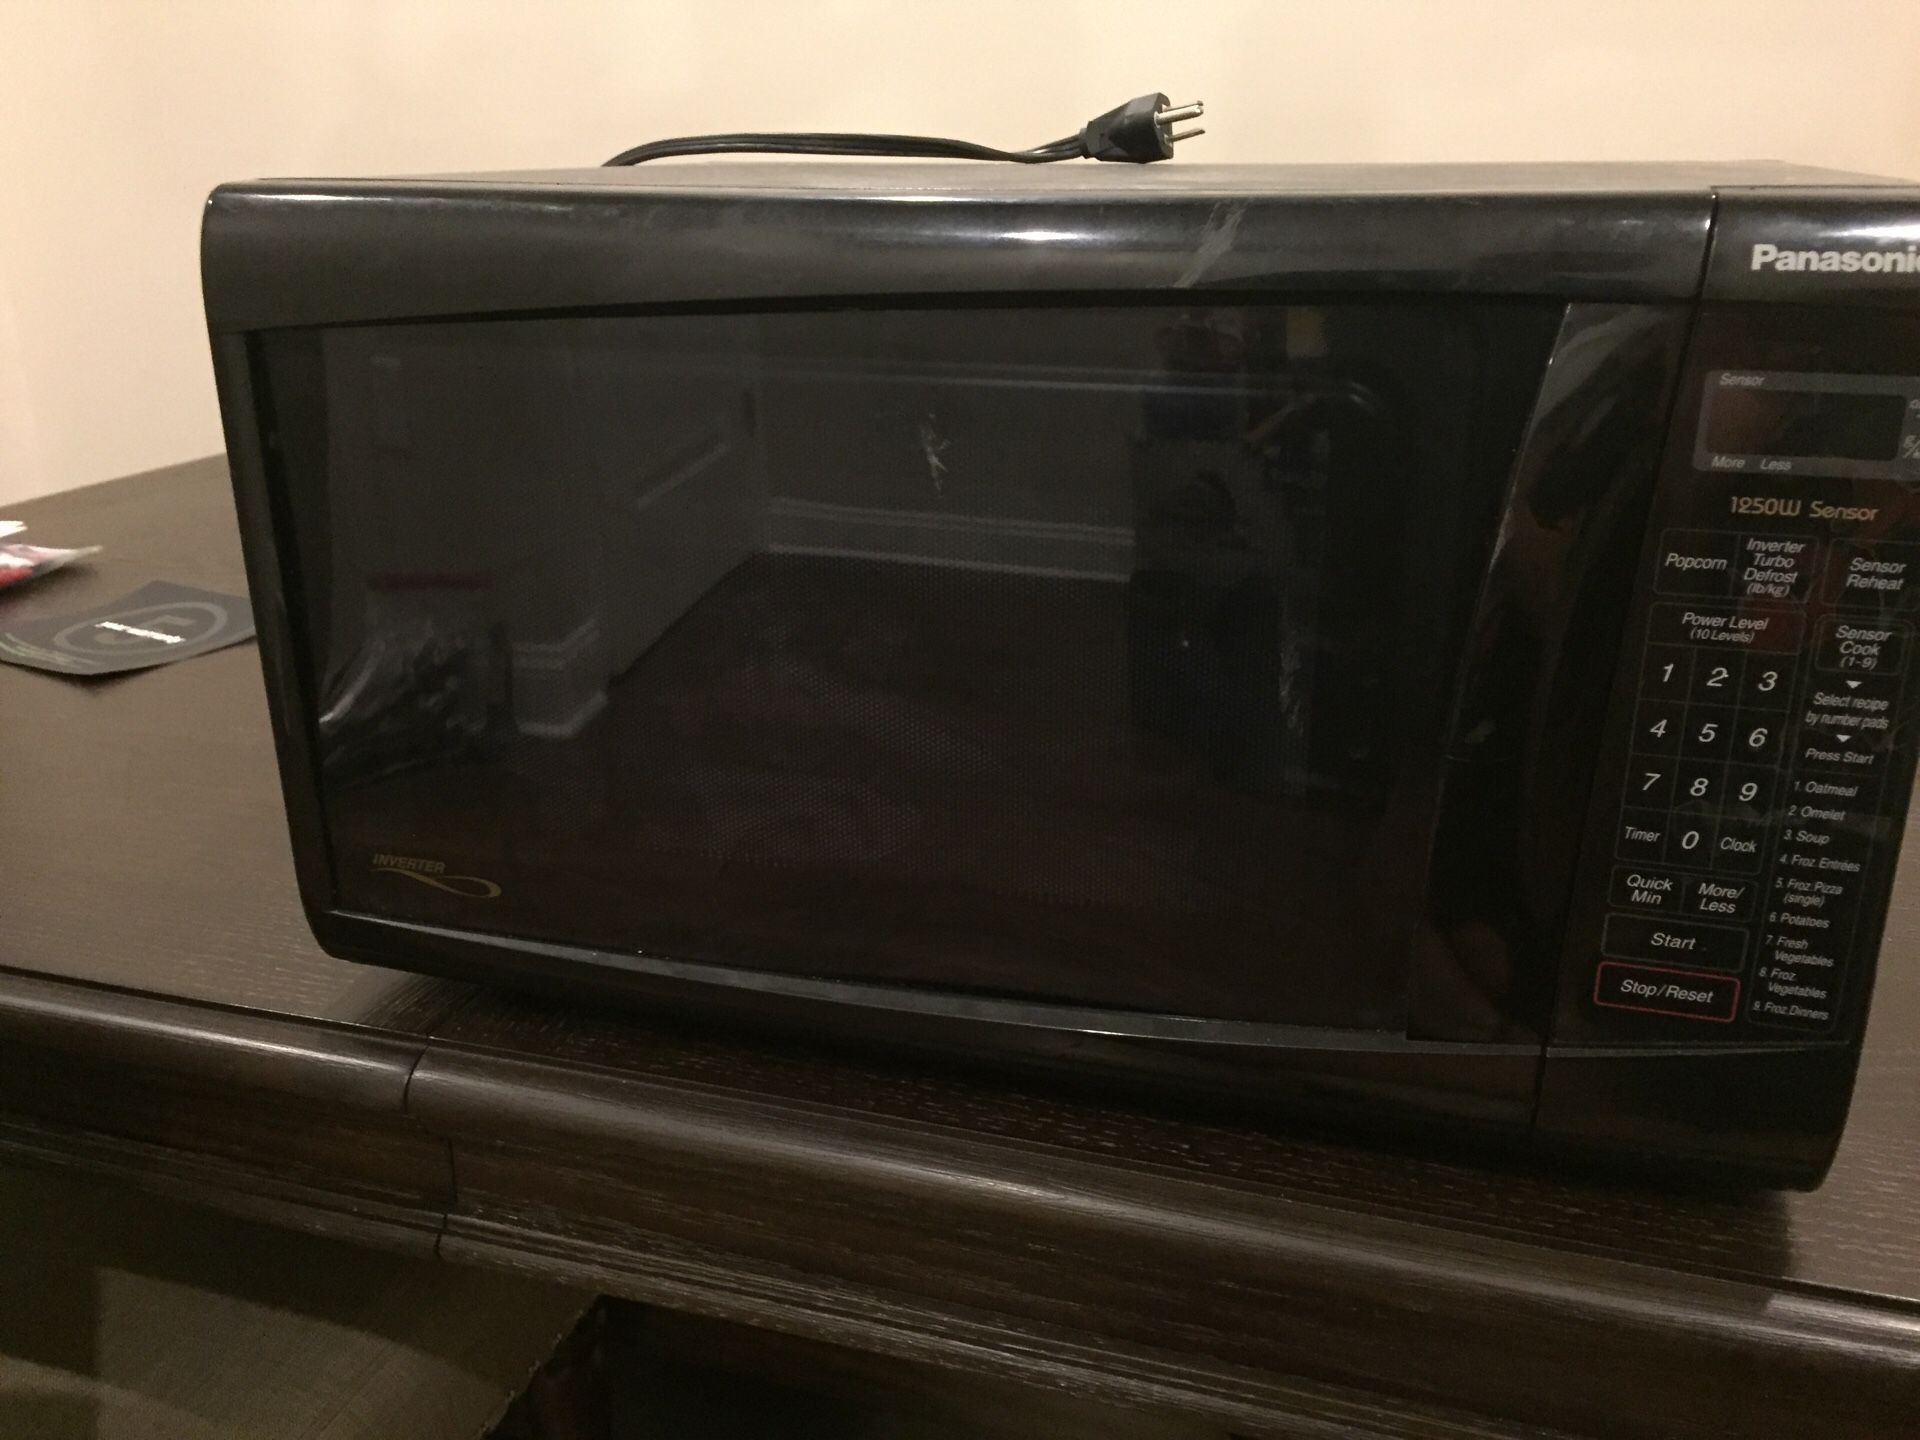 Panasonic microwave